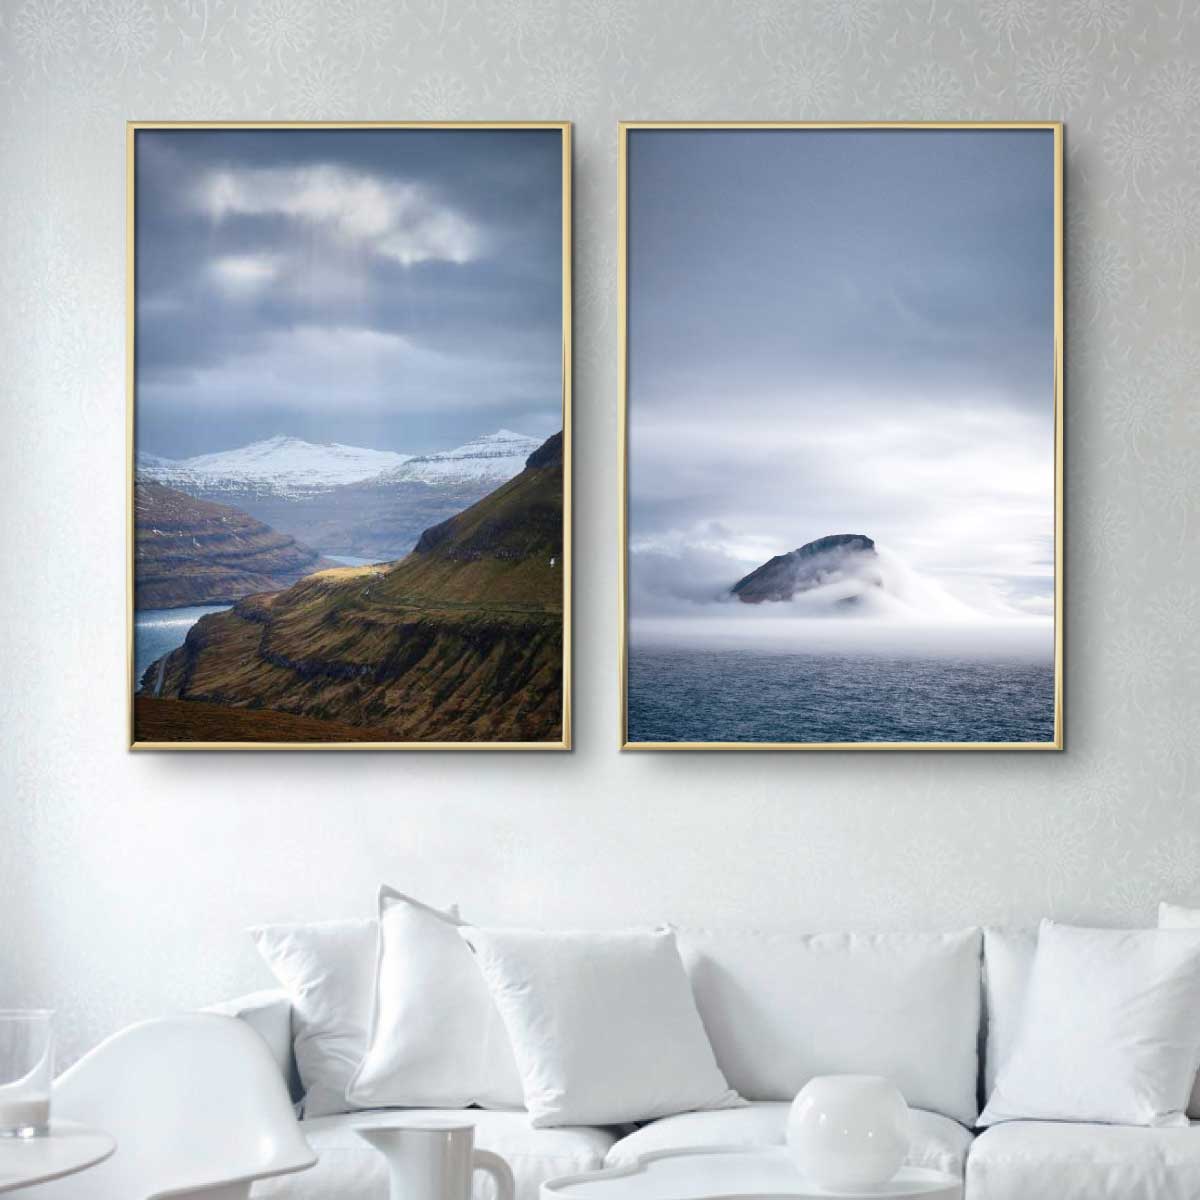 To naturplakater fra Færøerne